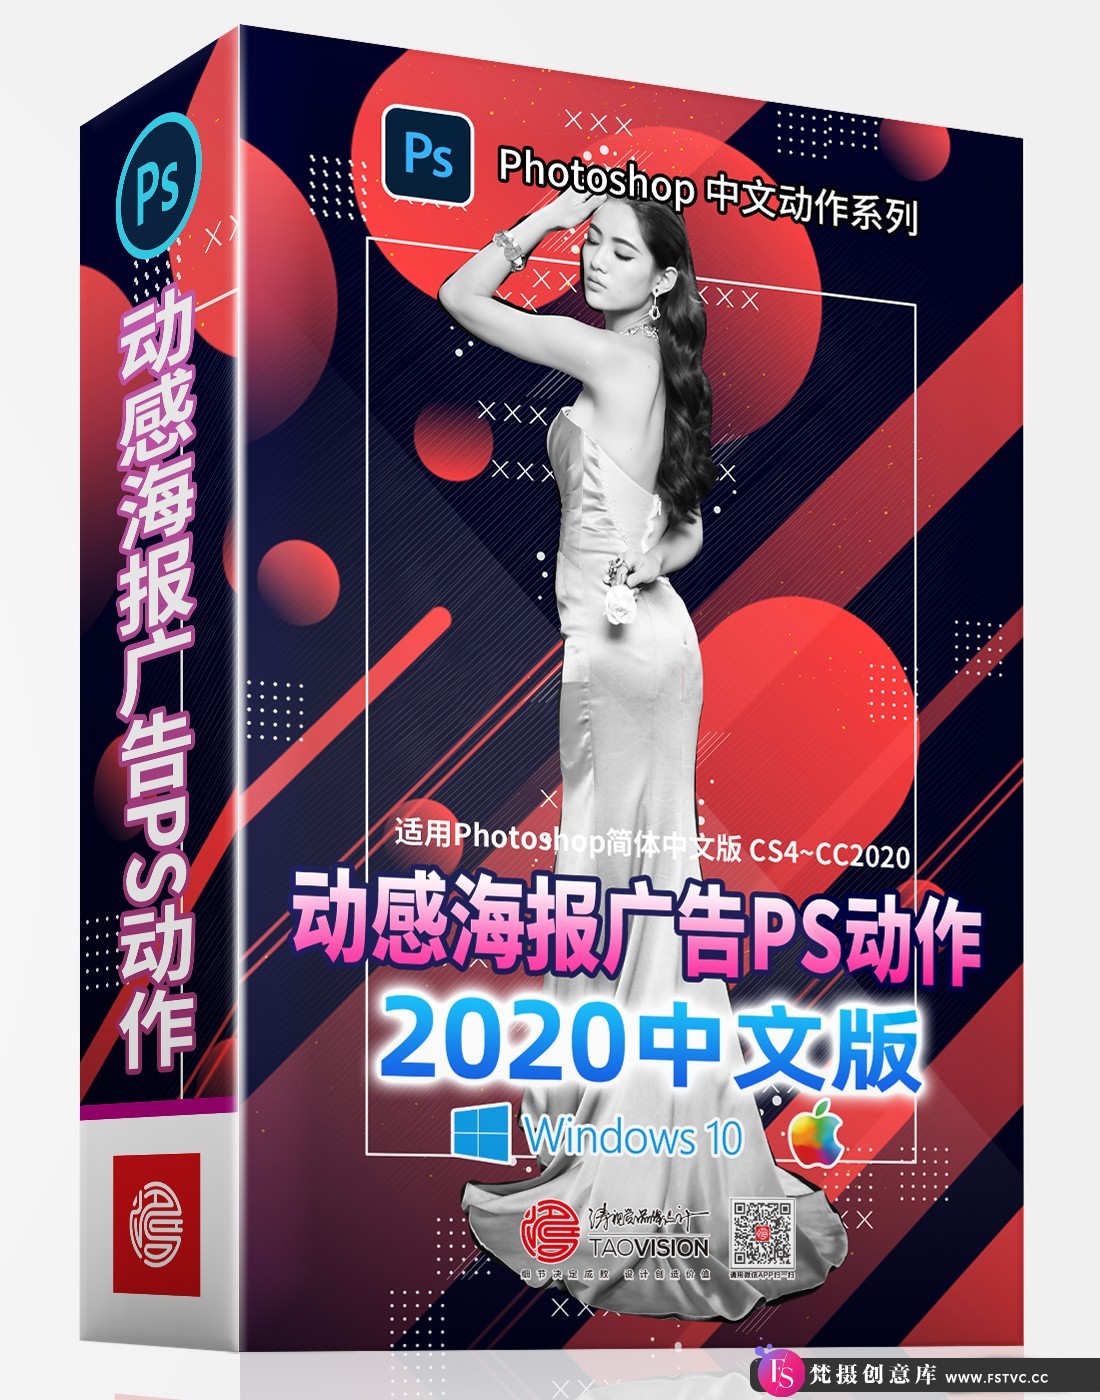 [中文版动作]动感海报广告PS动作中文版_完美支持2020-梵摄创意库